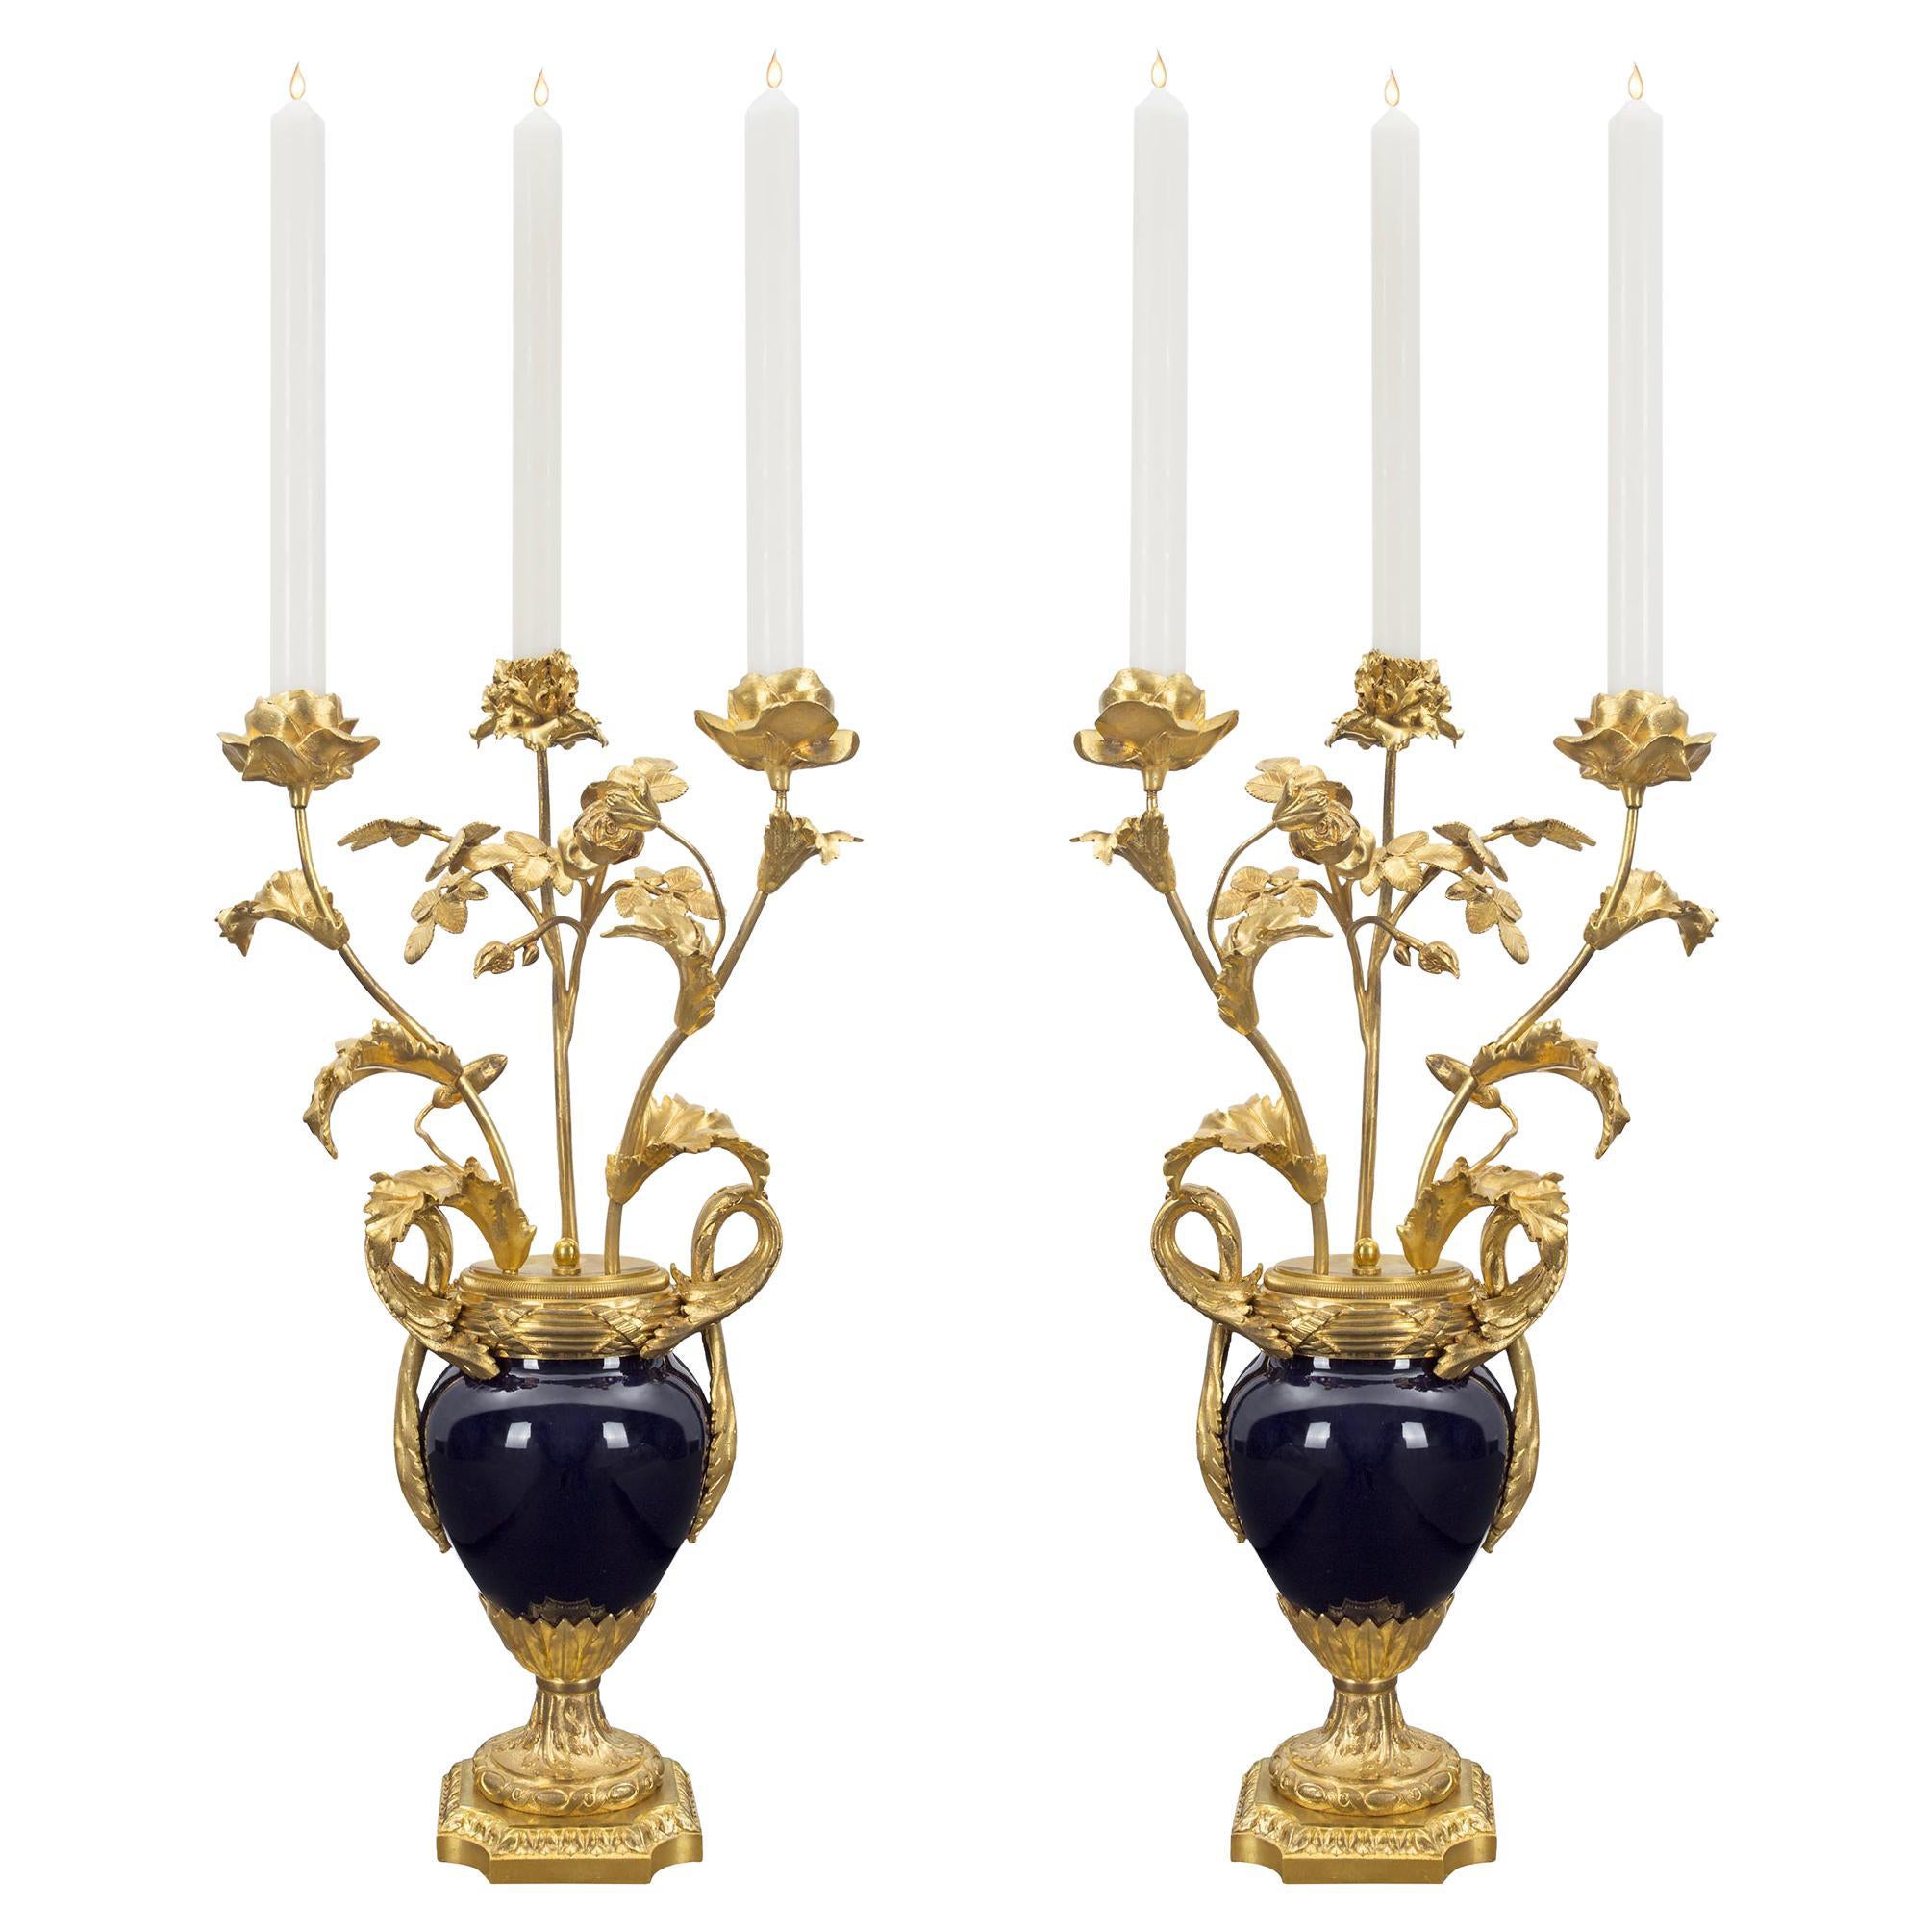 Paire de candélabres en porcelaine Svres de style Louis XVI du 19ème siècle français